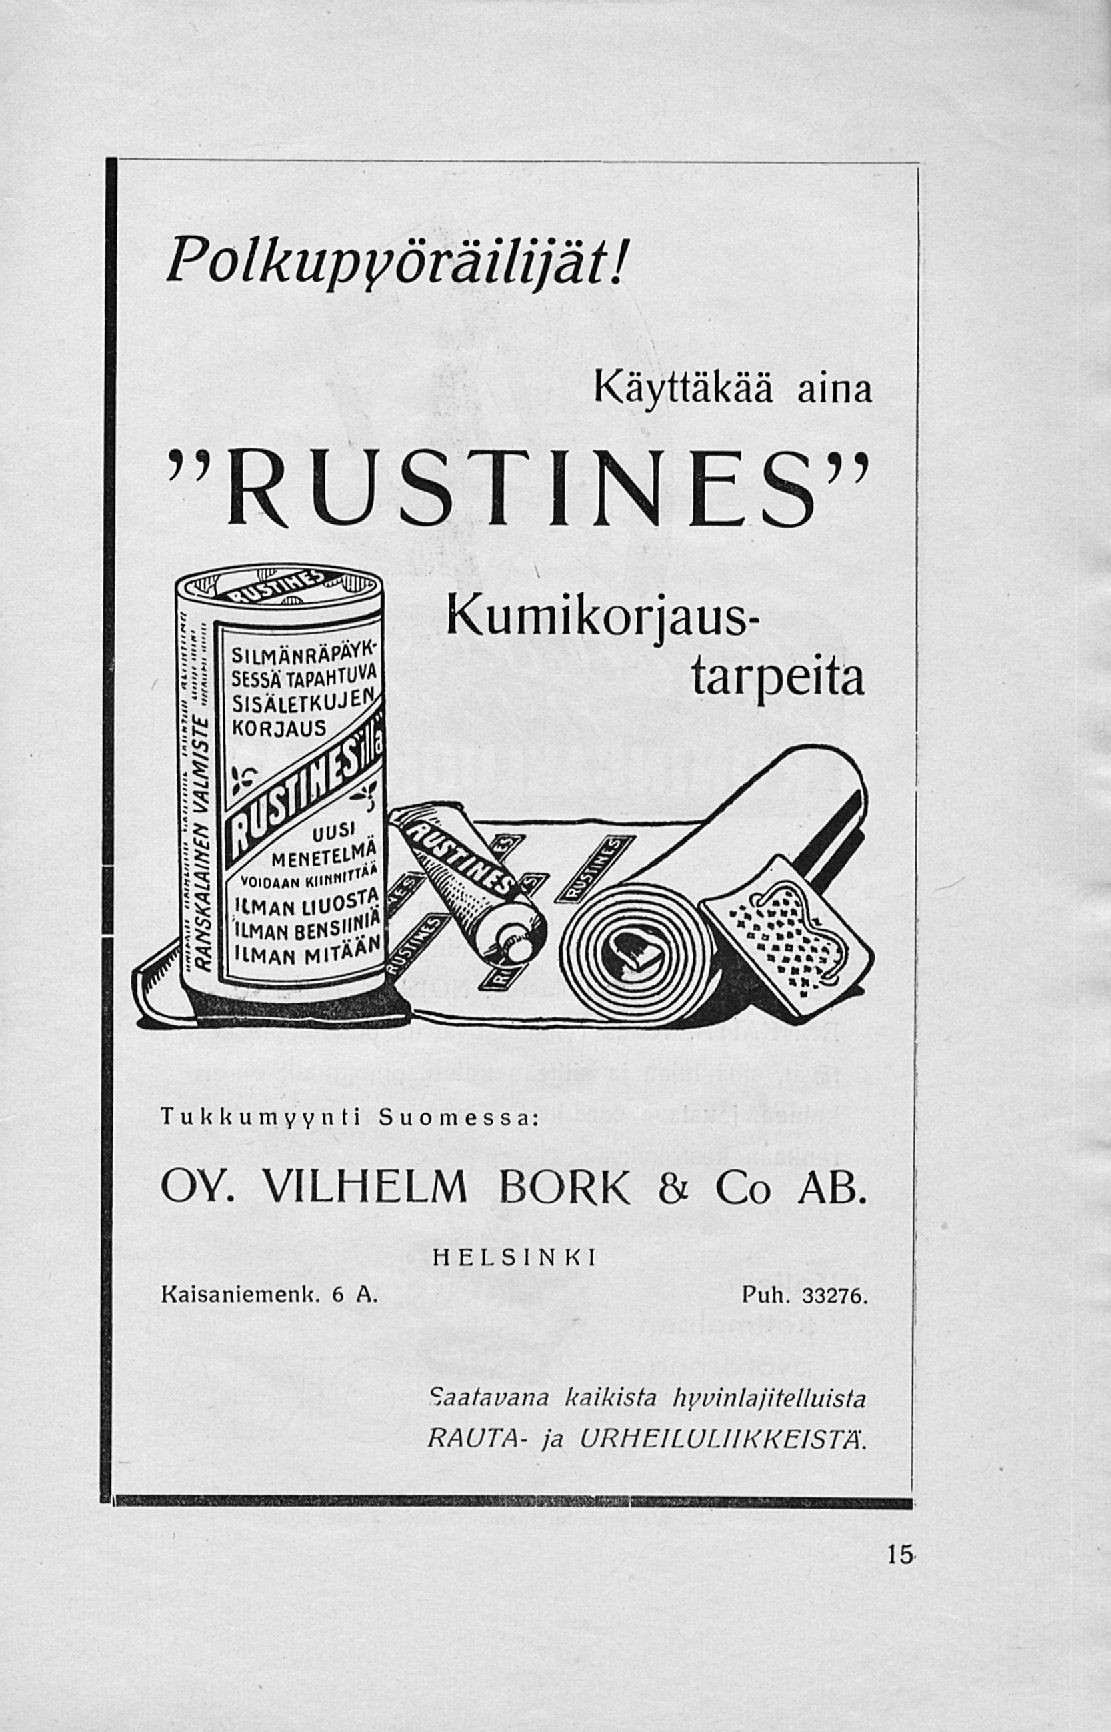 Polkupyöräilijät! Käyttäkää aina "RUSTINES" Kumikorjaustarpeita Tukkumyynti Suomessa: OY. VILHELM BORK & Co AB.